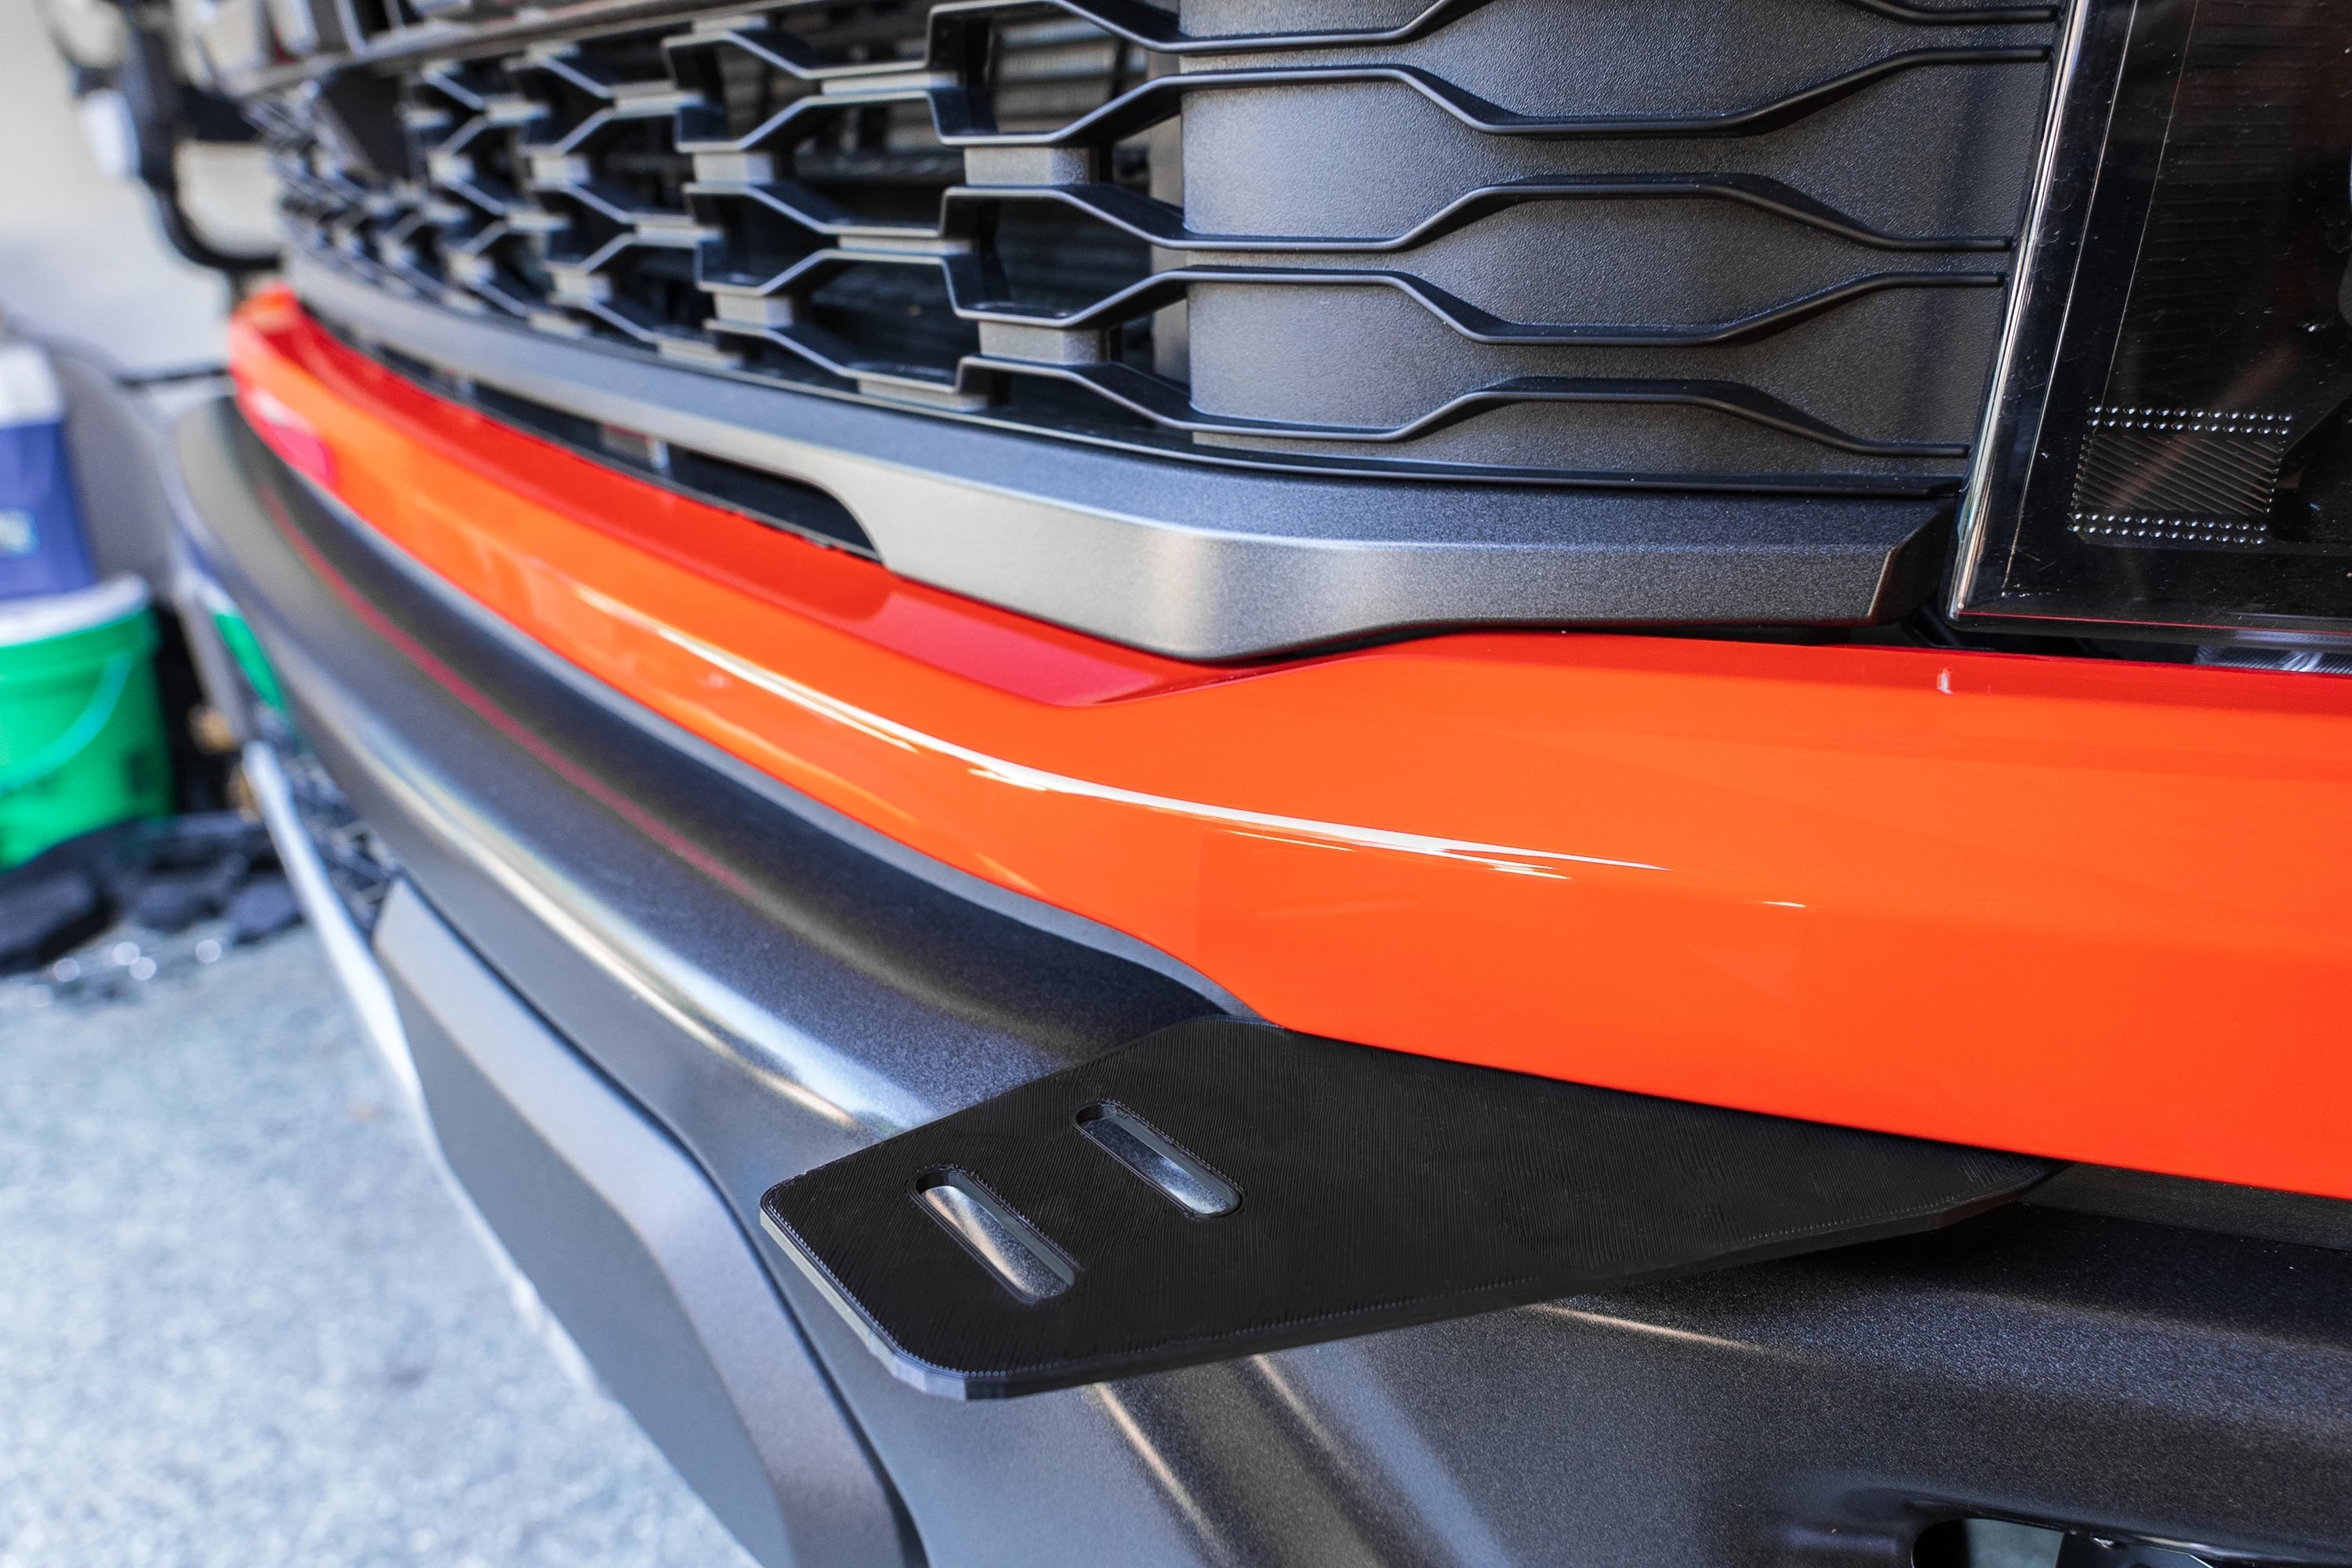 Stainless steel sidebars for Ford Ranger & Ranger Raptor